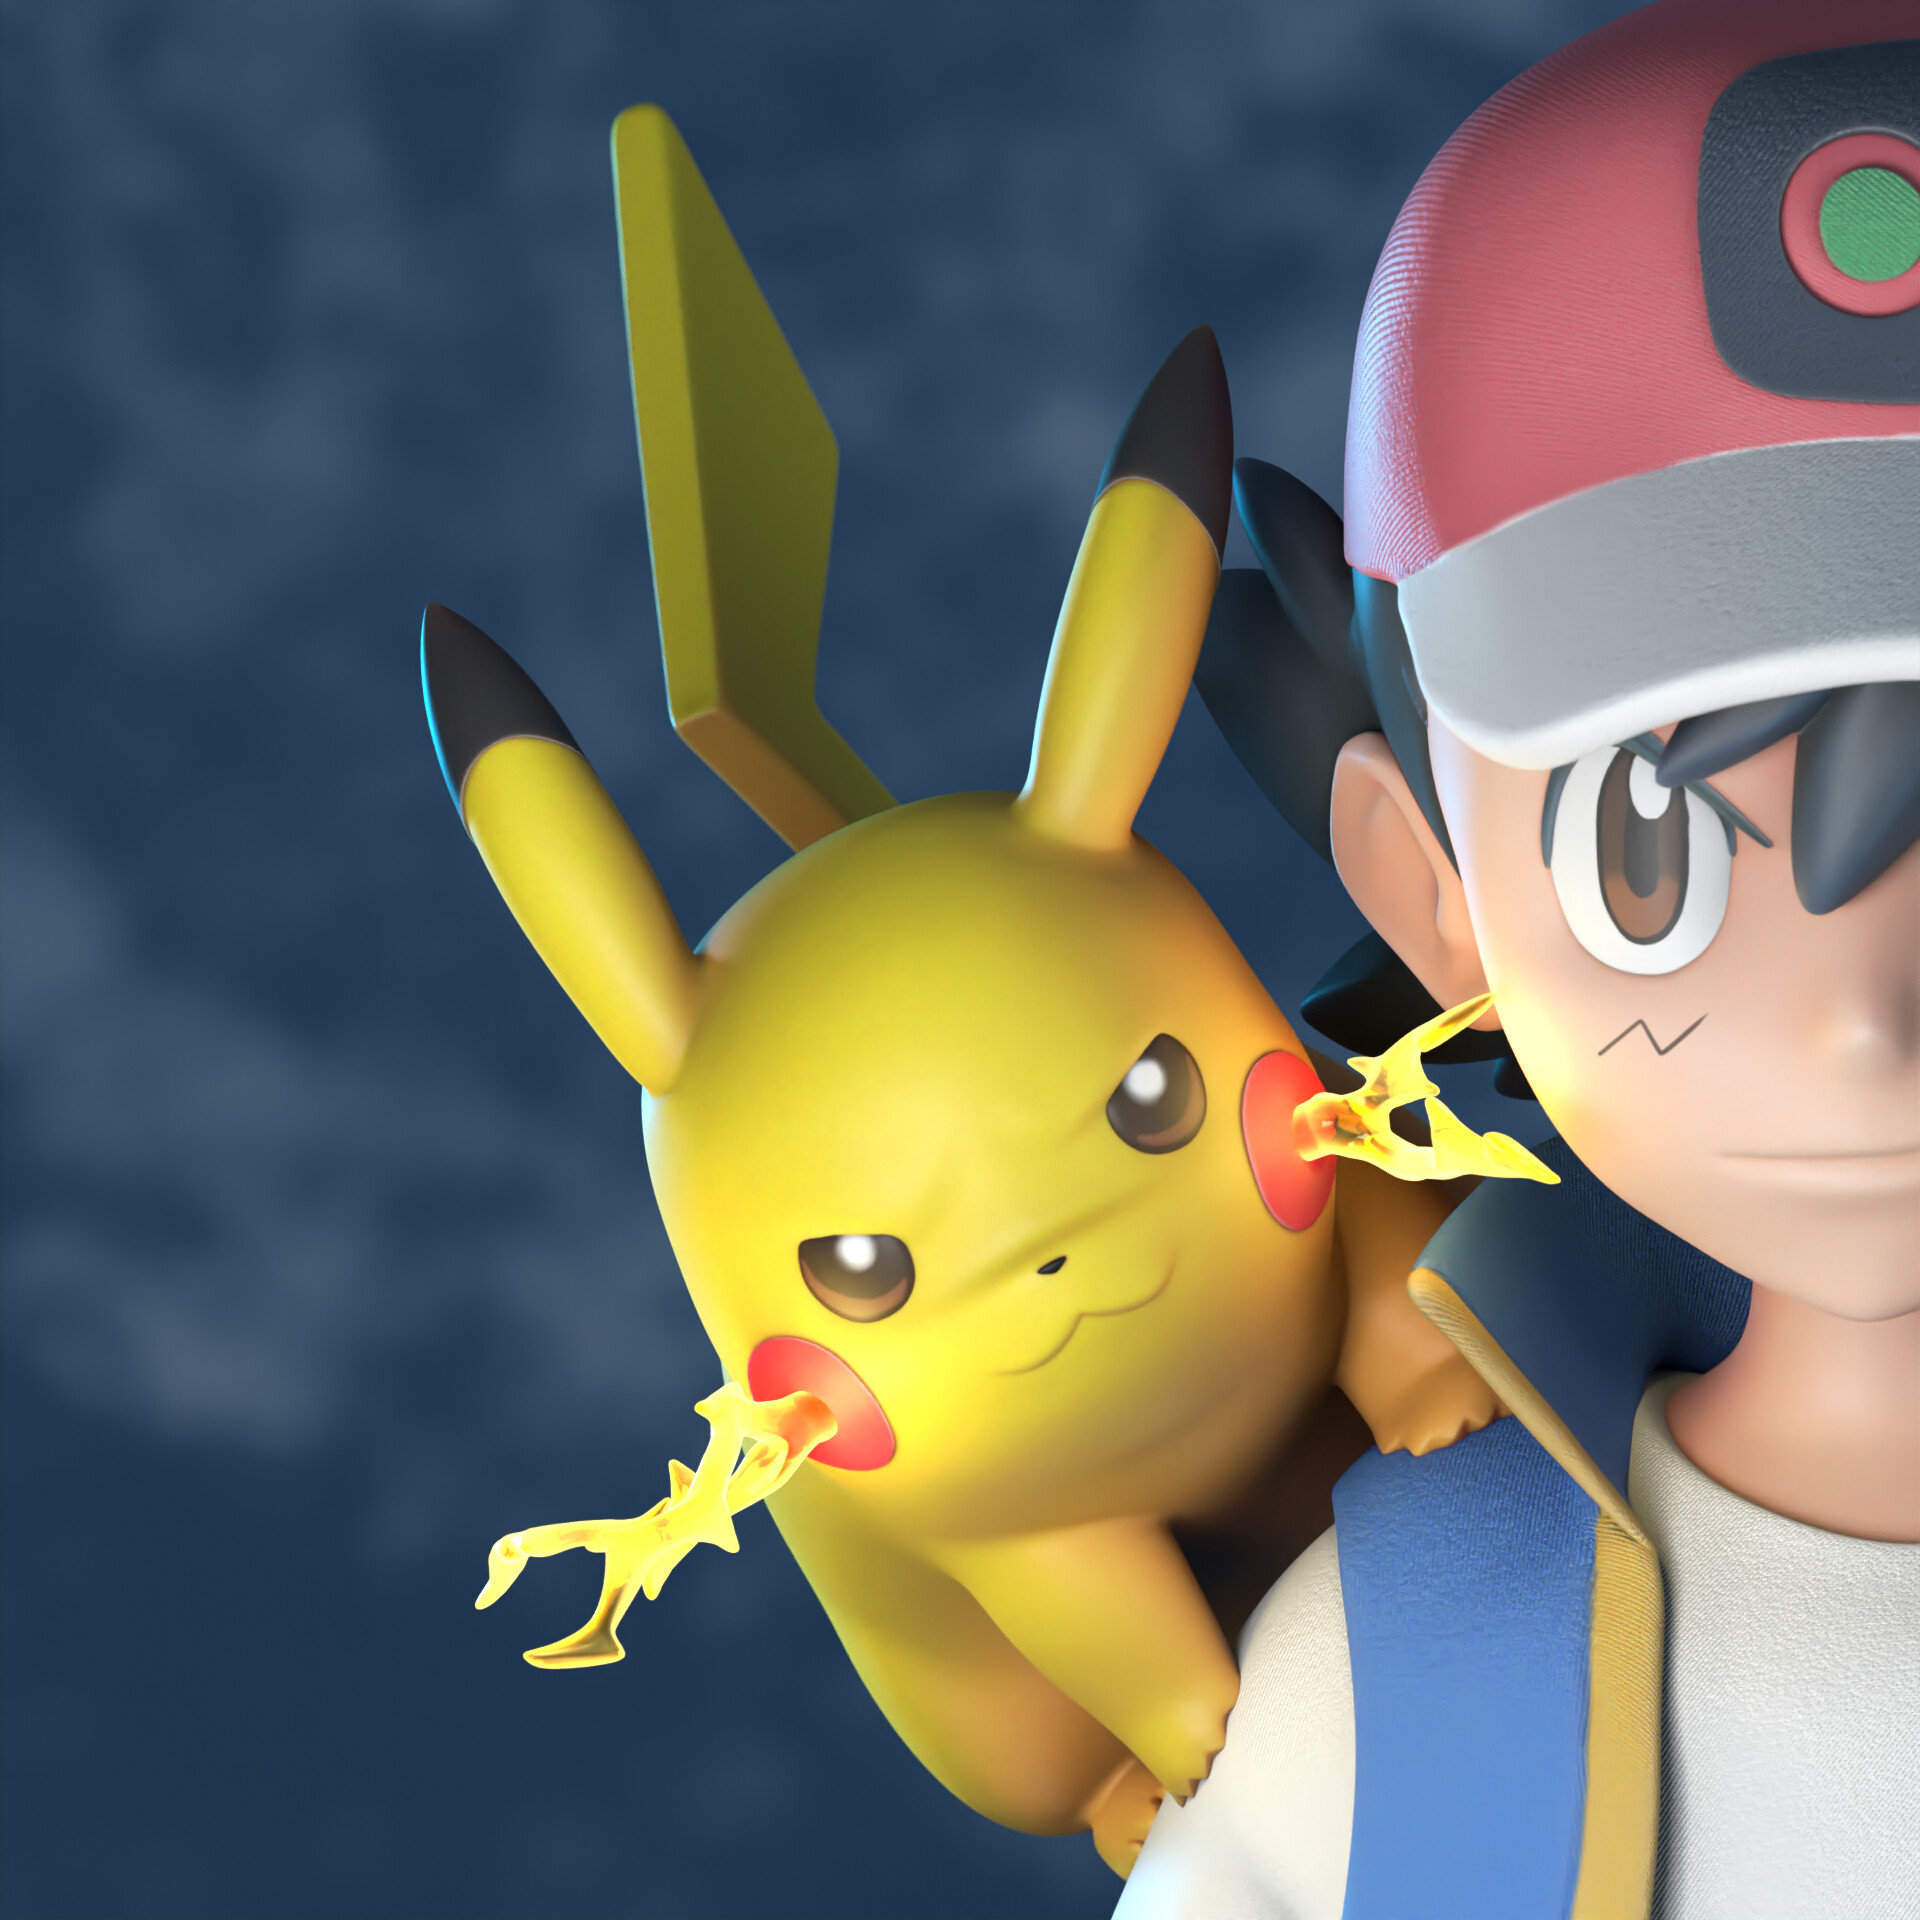 Sac à Dos Lady Pikachu Pokémon 3D sur Kas Design